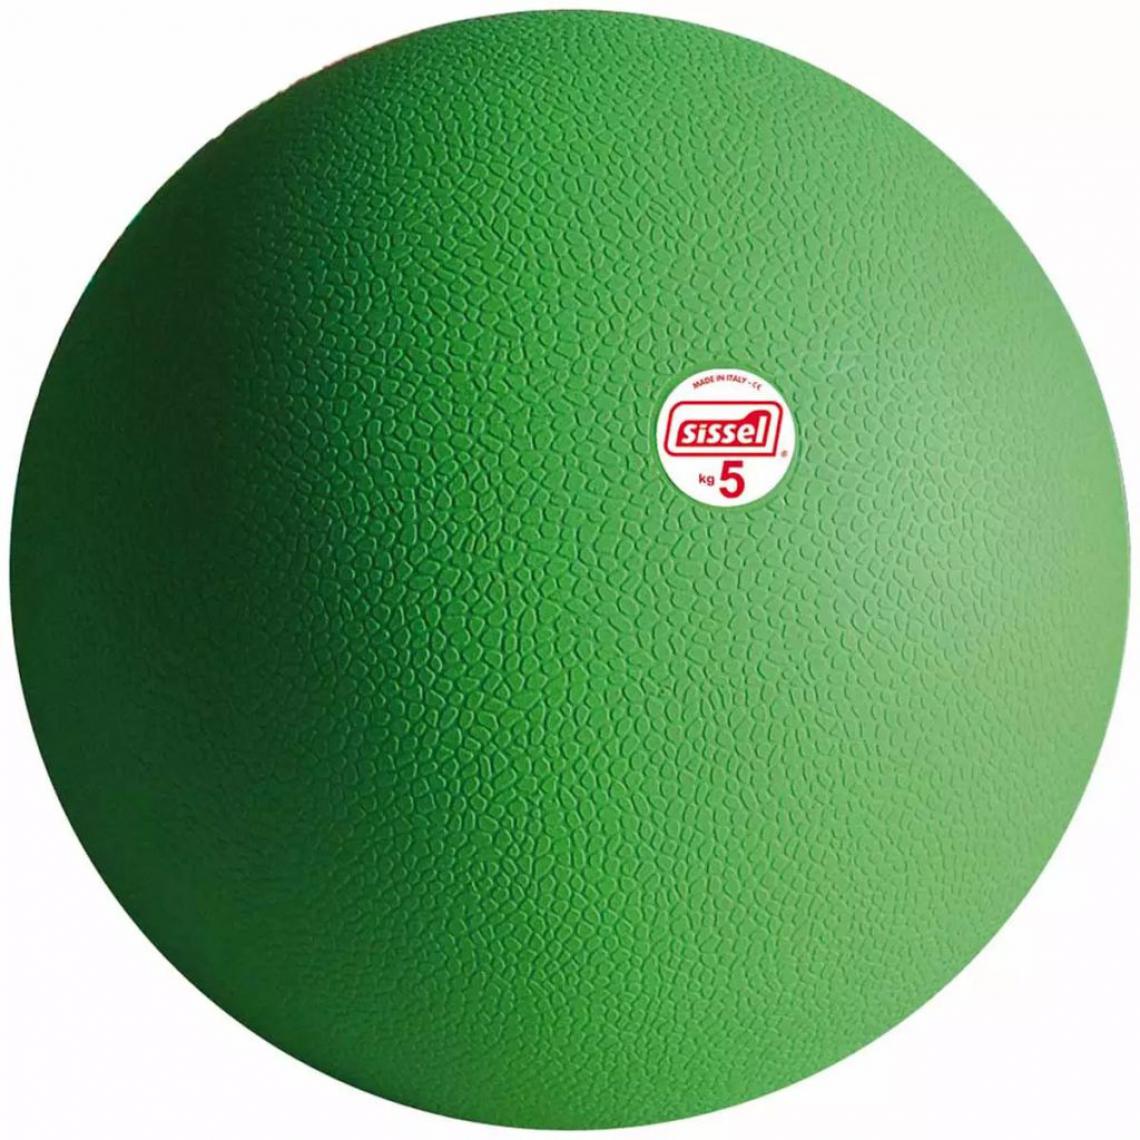 Sissel - Sissel Ballon médicinal 5 kg Vert SIS-160.324 - Jeux de balles